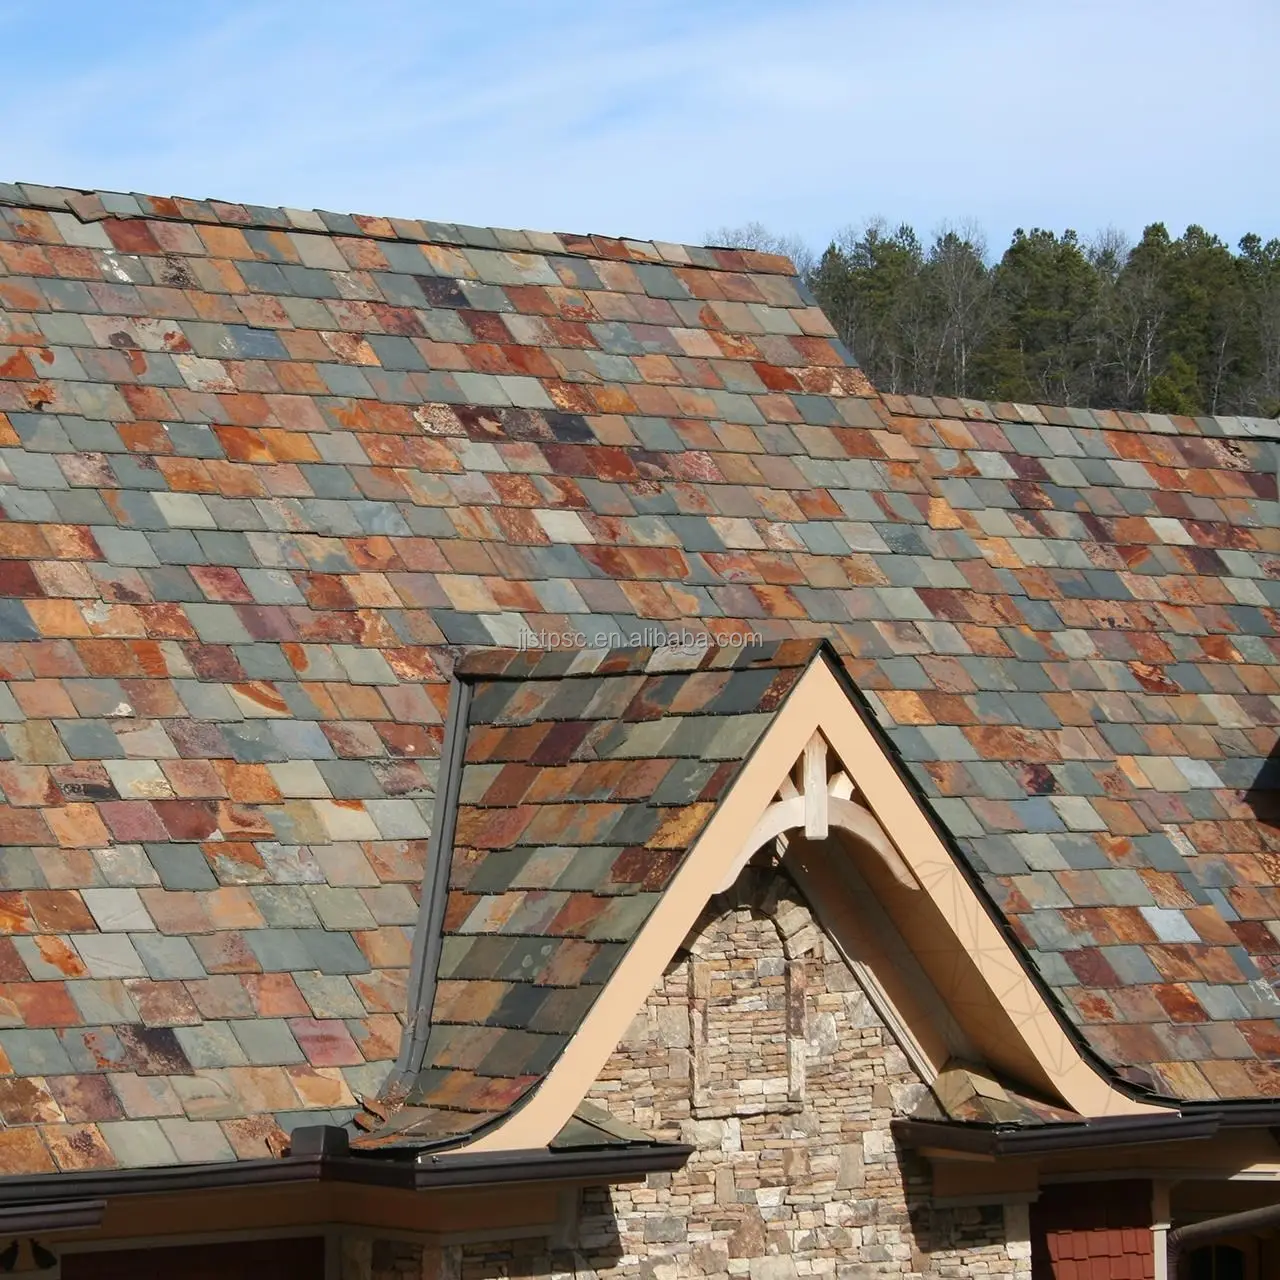 Carreaux de toit en ardoise rustique multicolore roussée, taille de 400x200mm, pour couverture